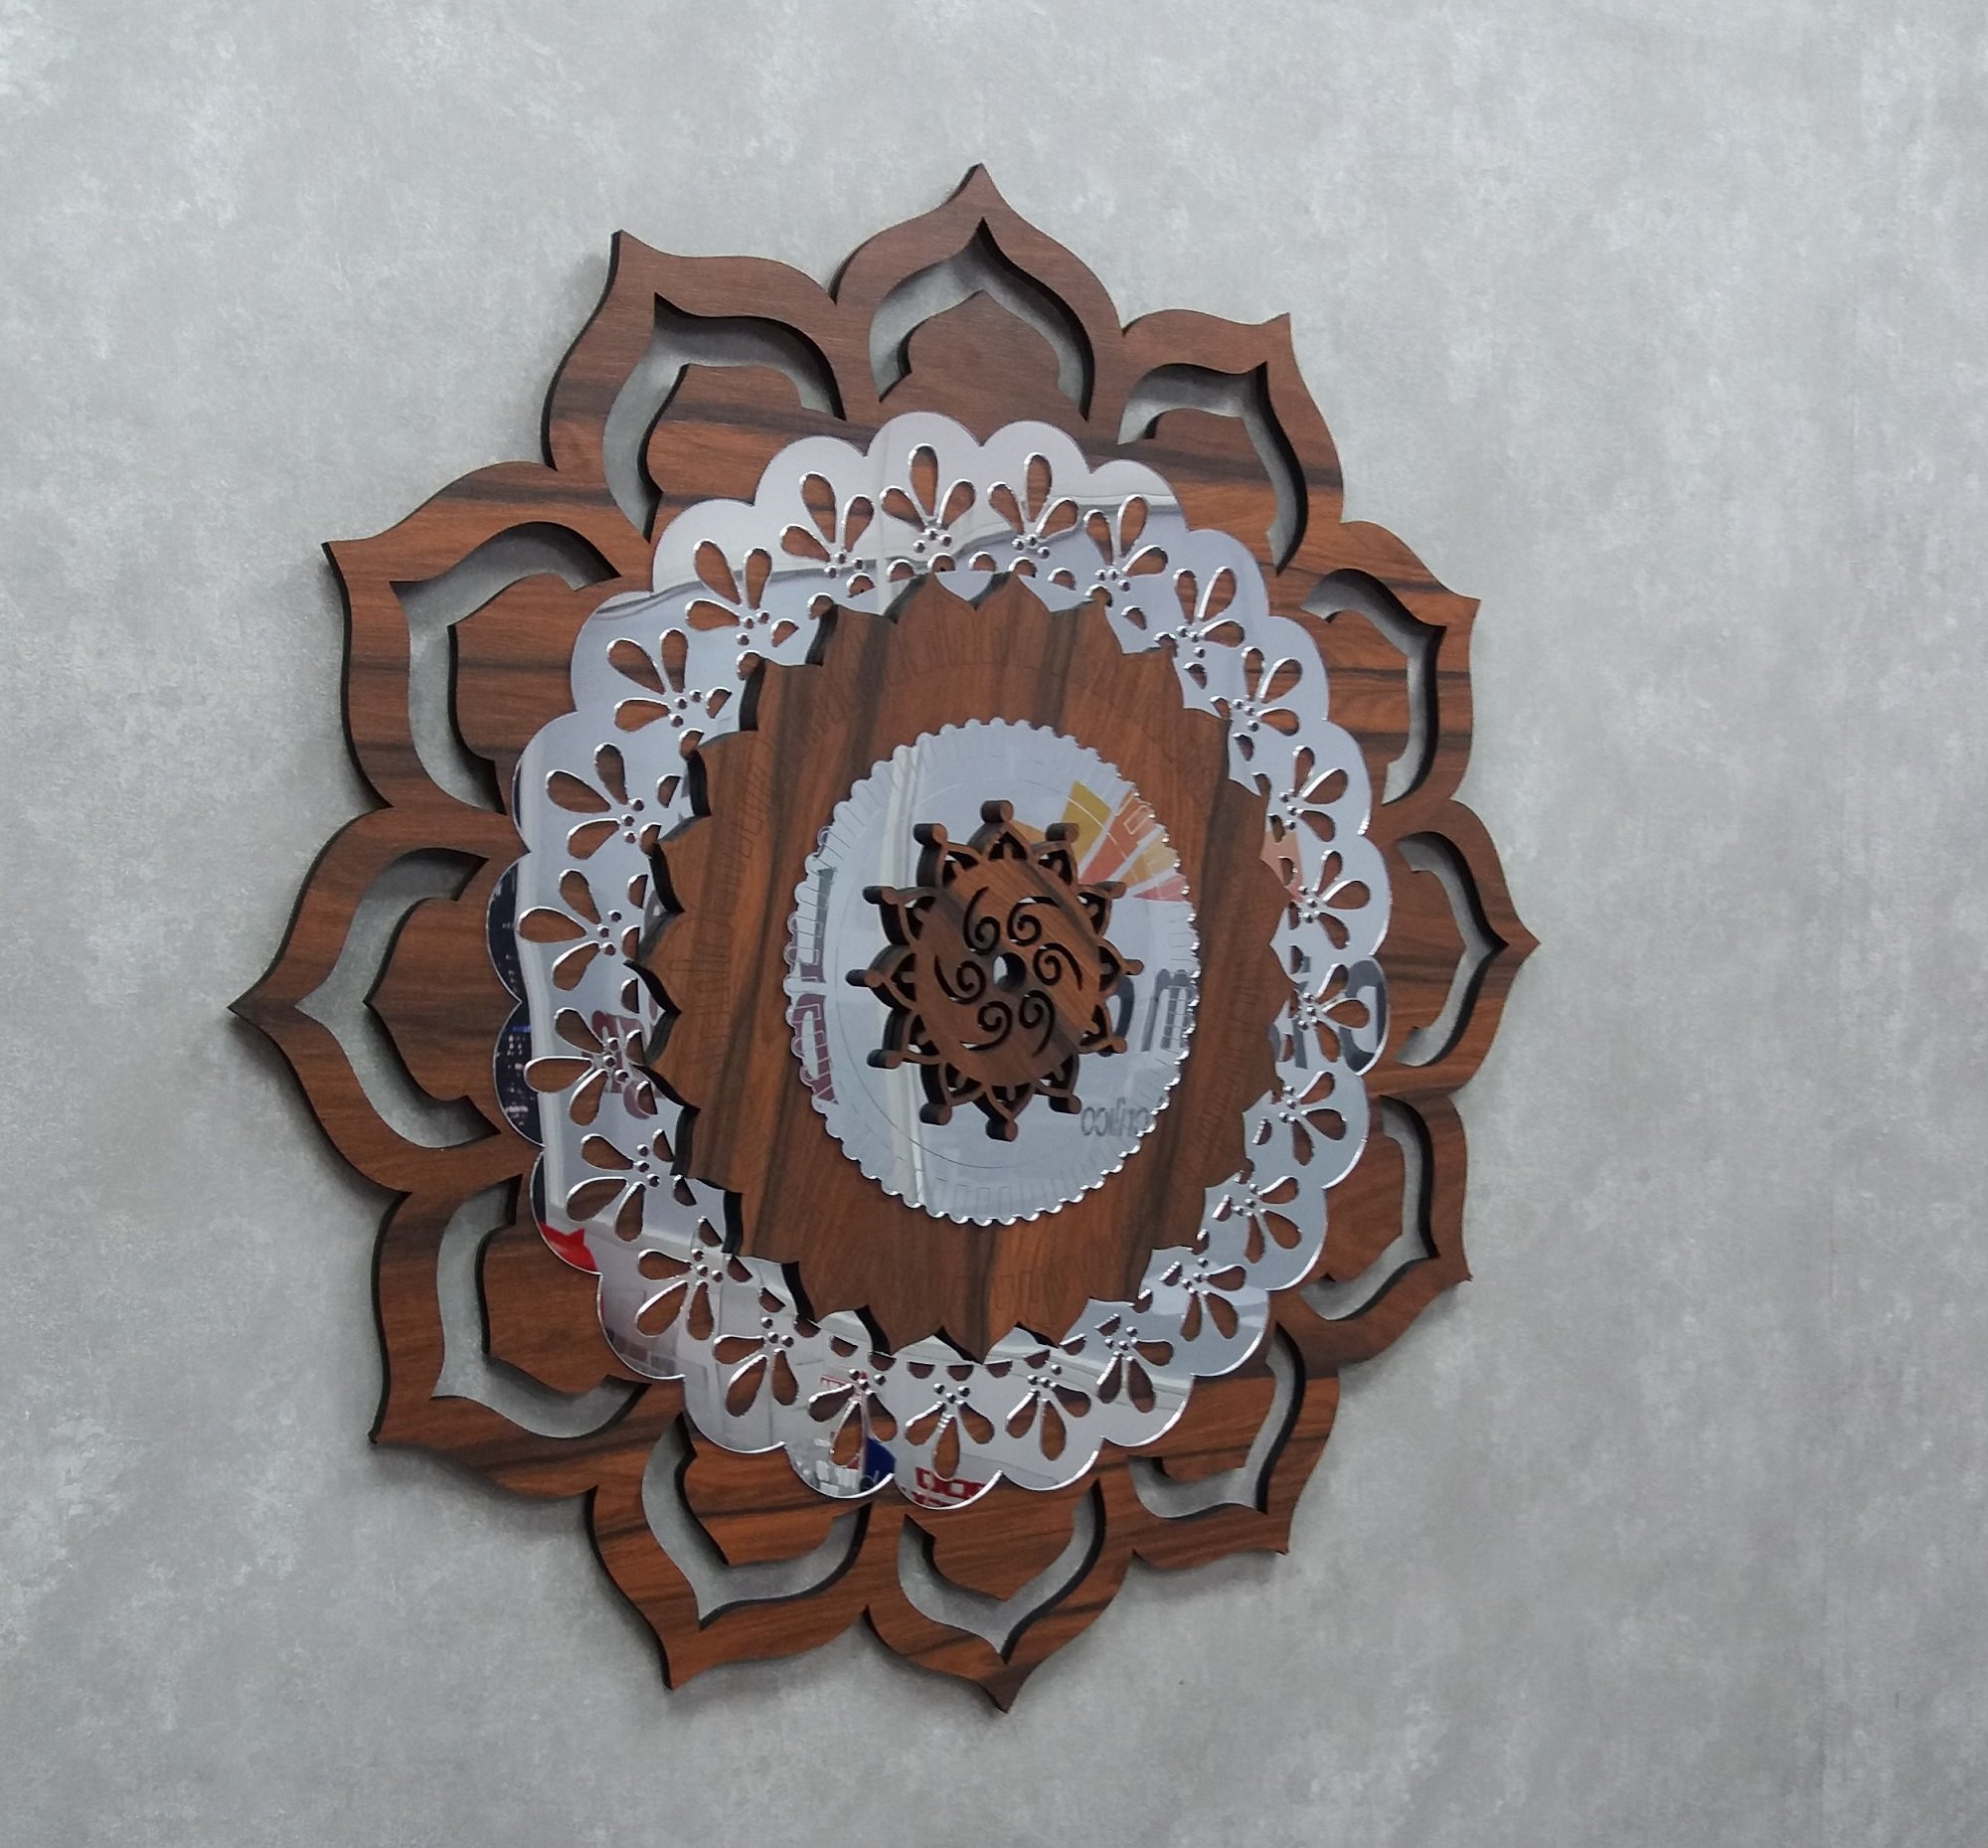 Quadro Mandala Decorativa em Madeira 65 cm 38108:Marrom - 4